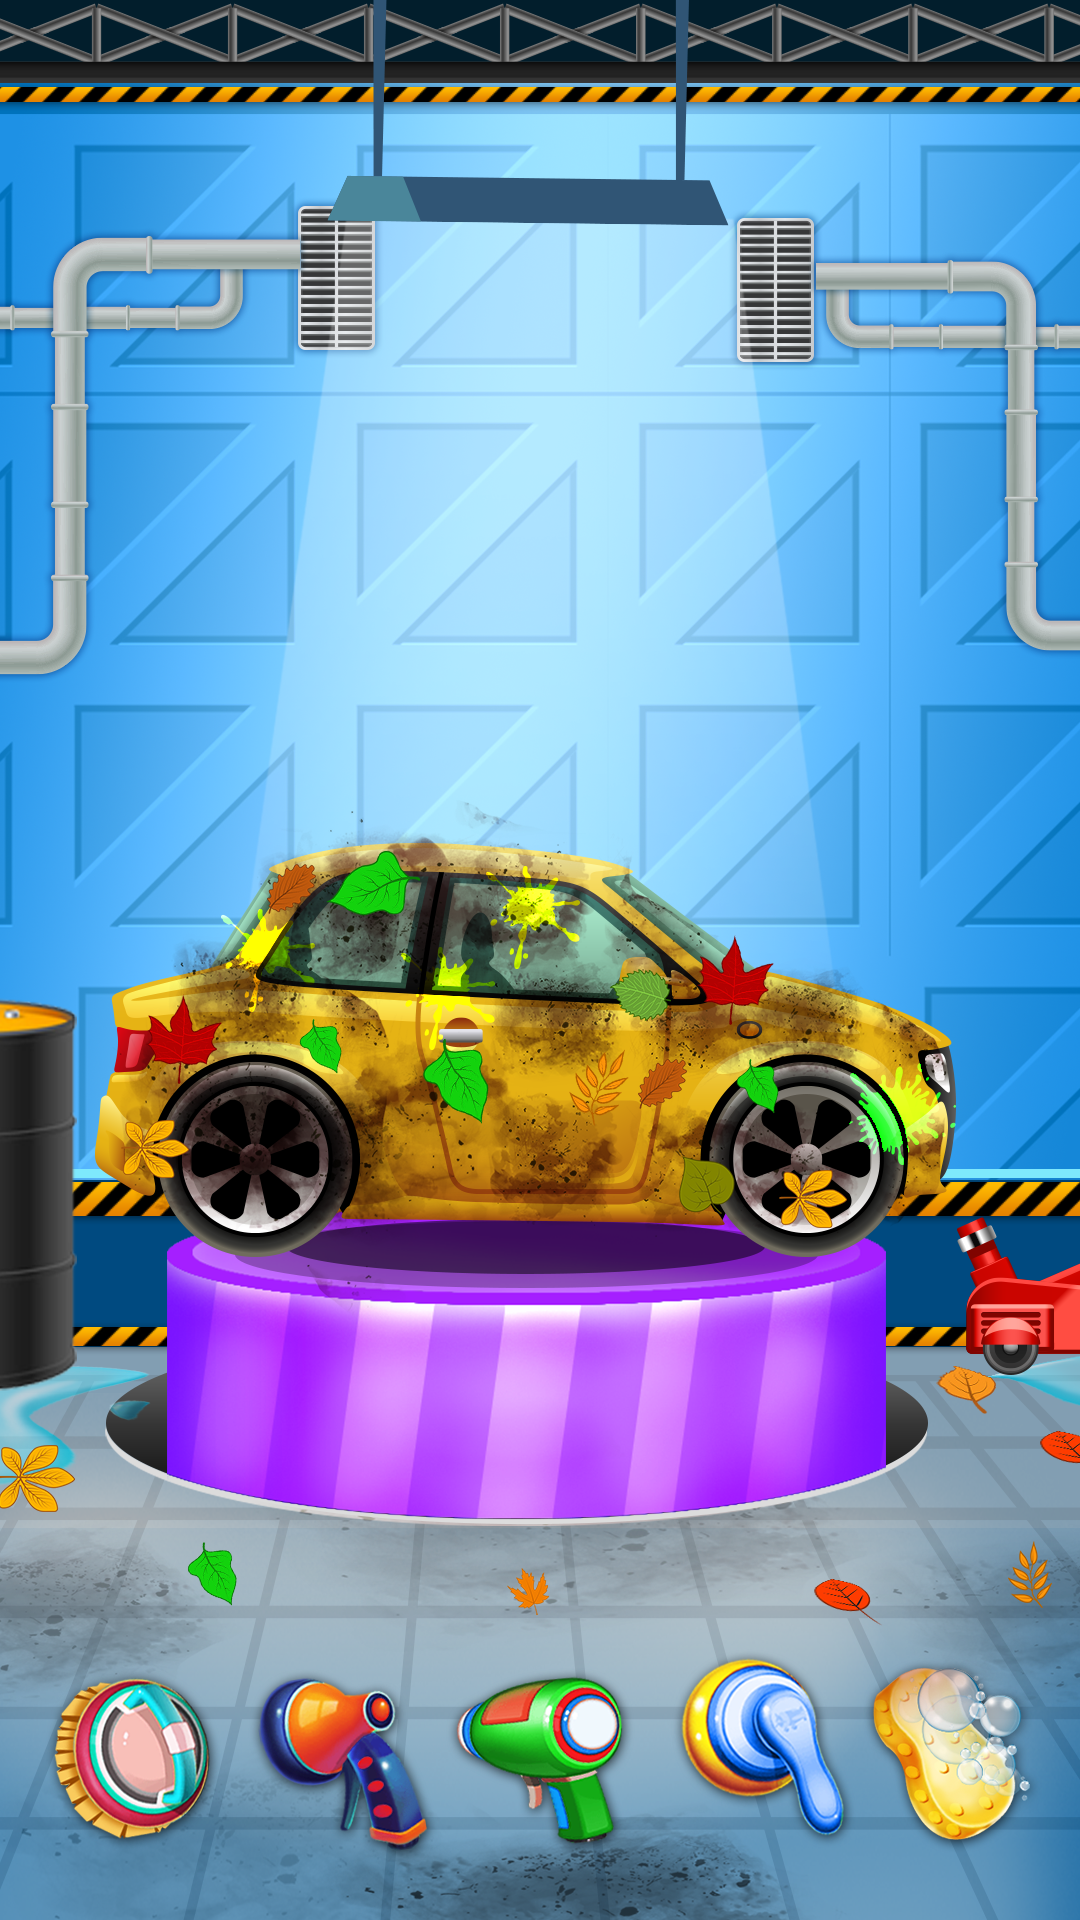 Screenshot 1 of Trò chơi rửa xe của tôi 2.1